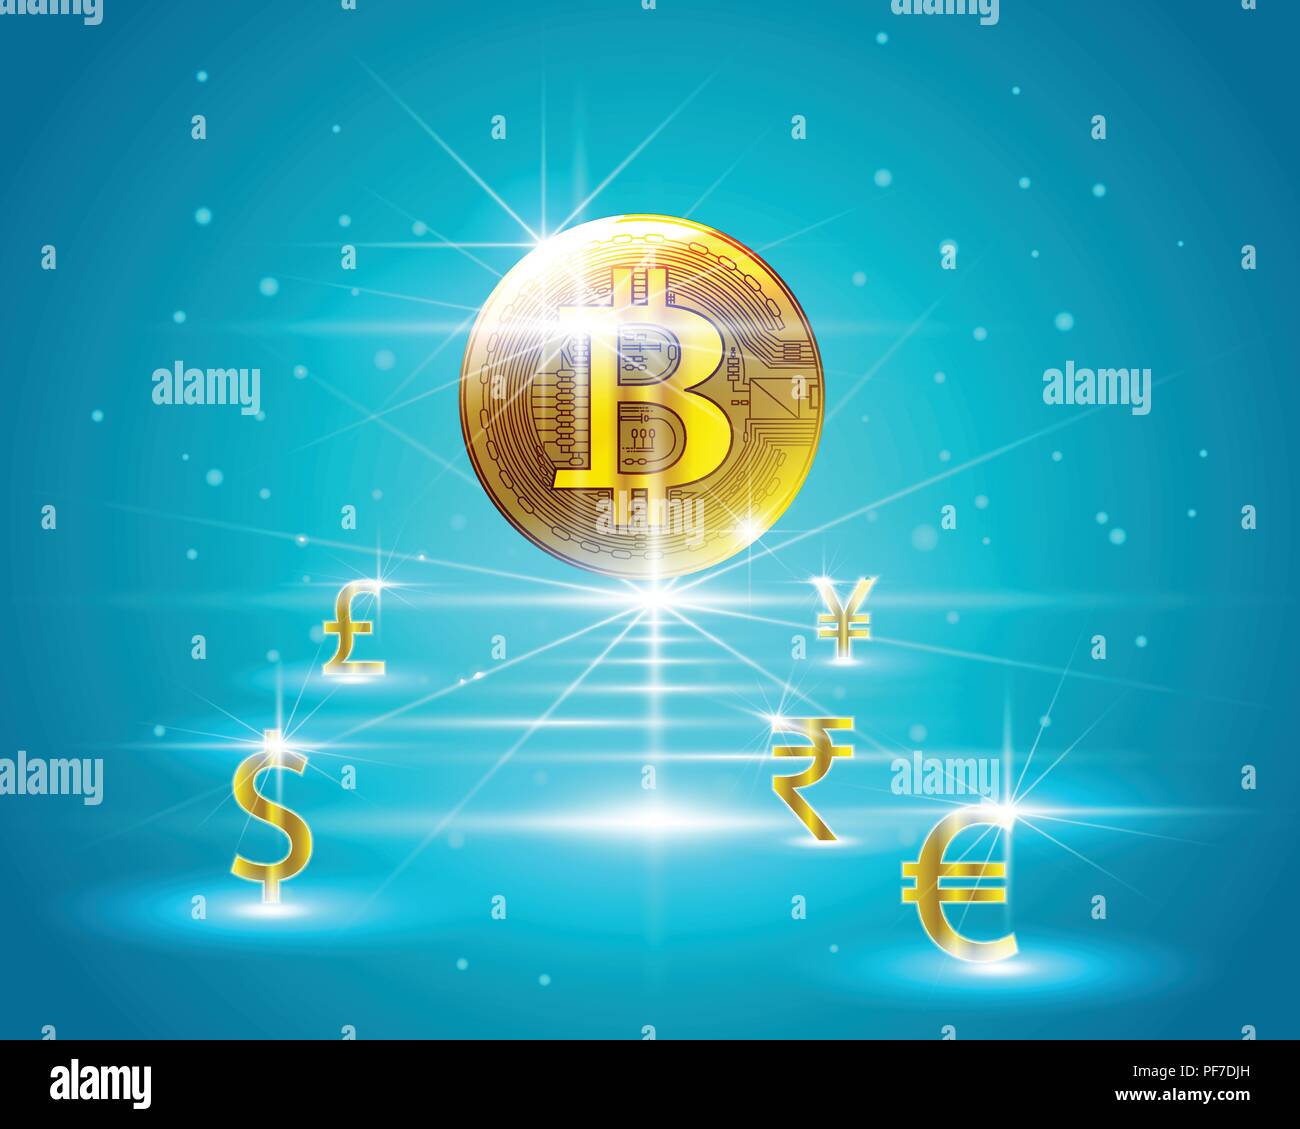 Golden bitcoin cryptocurrency digitale a Dollar,Euro,Rupia Indiana,British Pound,yuan cinese,Yen giapponese valuta il modello di business di concetti di exchange. V Illustrazione Vettoriale